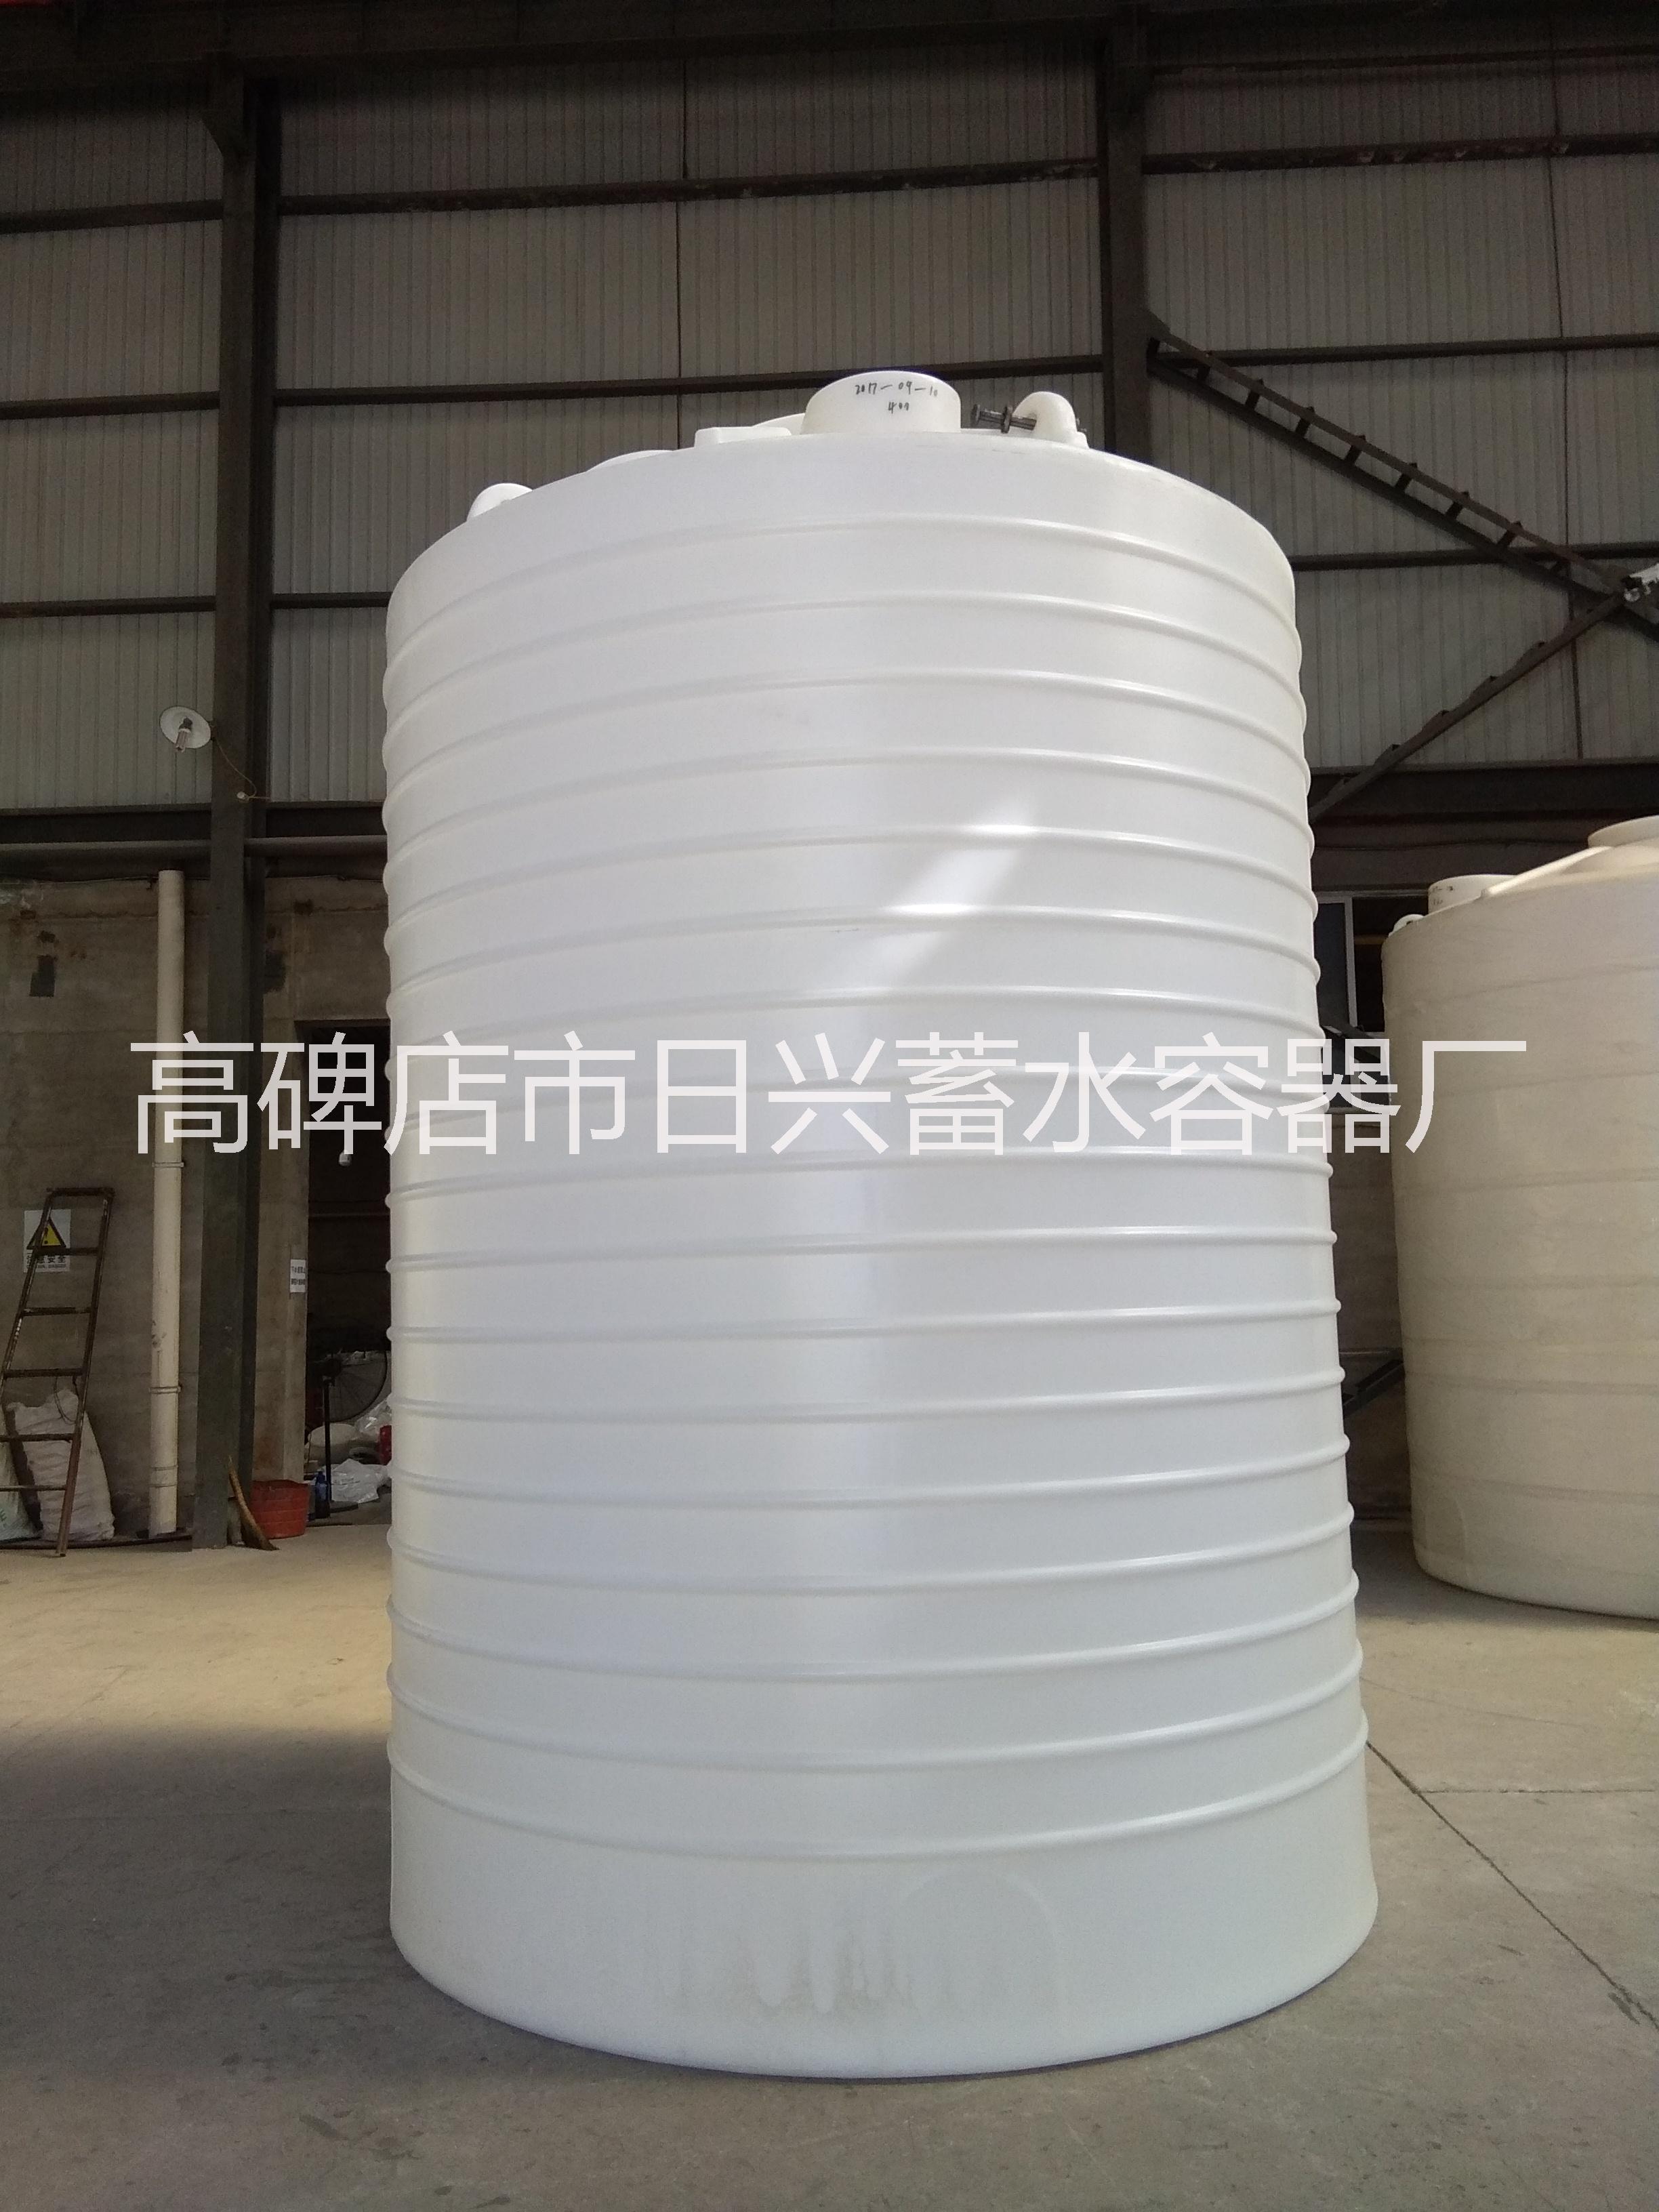 北京供货商天津津南15吨塑料桶价格醇油储罐塑料贮存罐